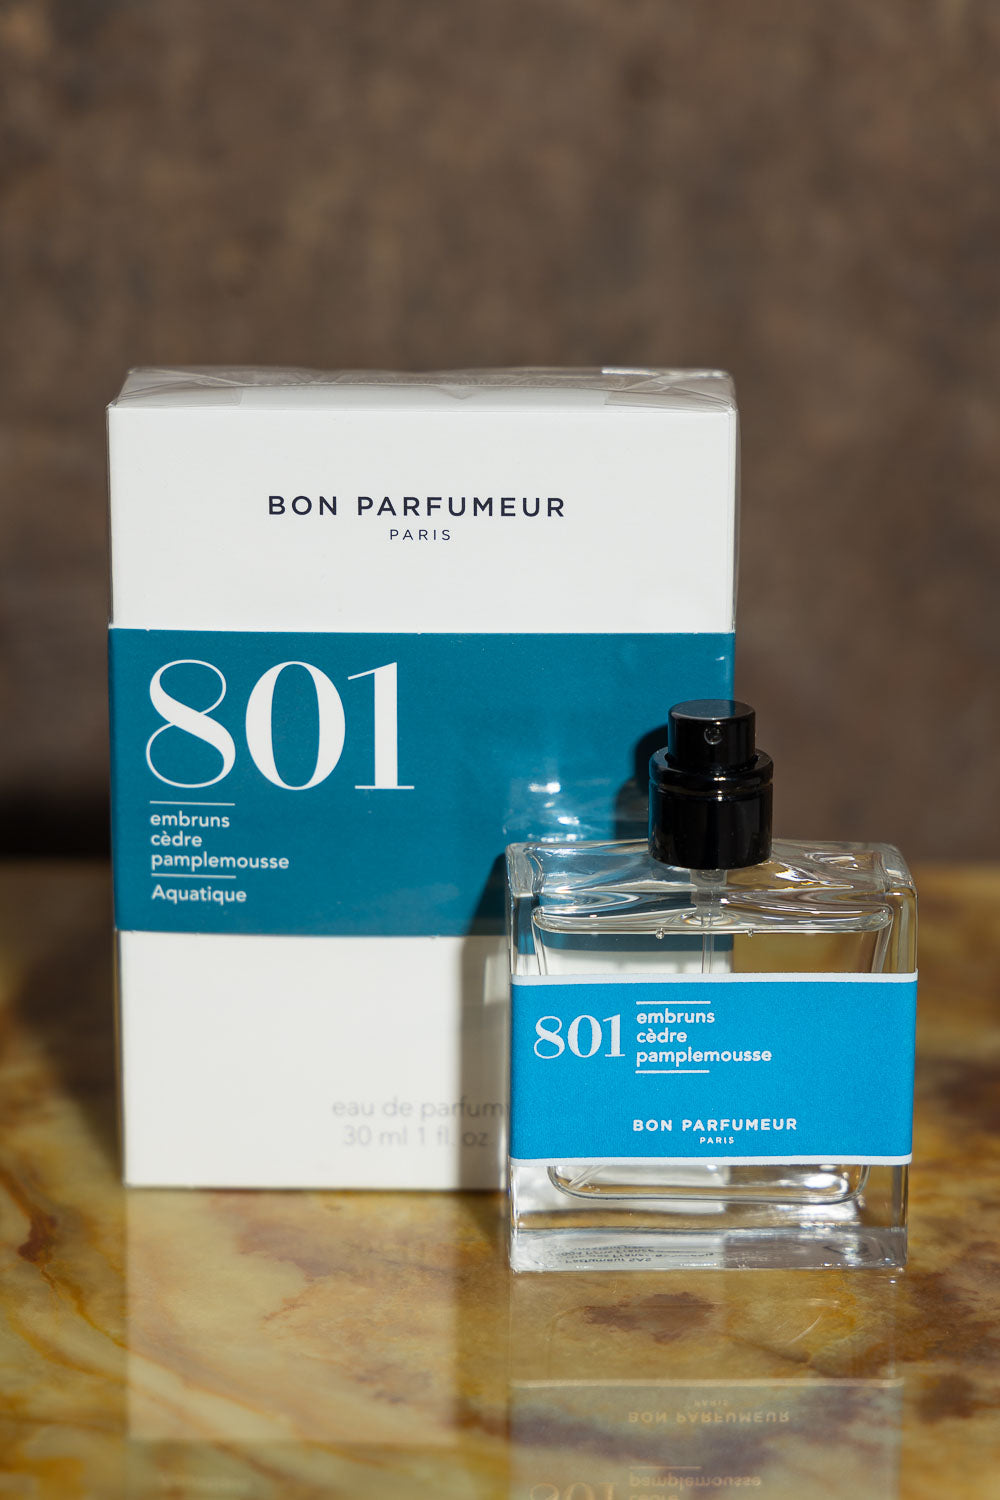 Bon Perfumeur 801